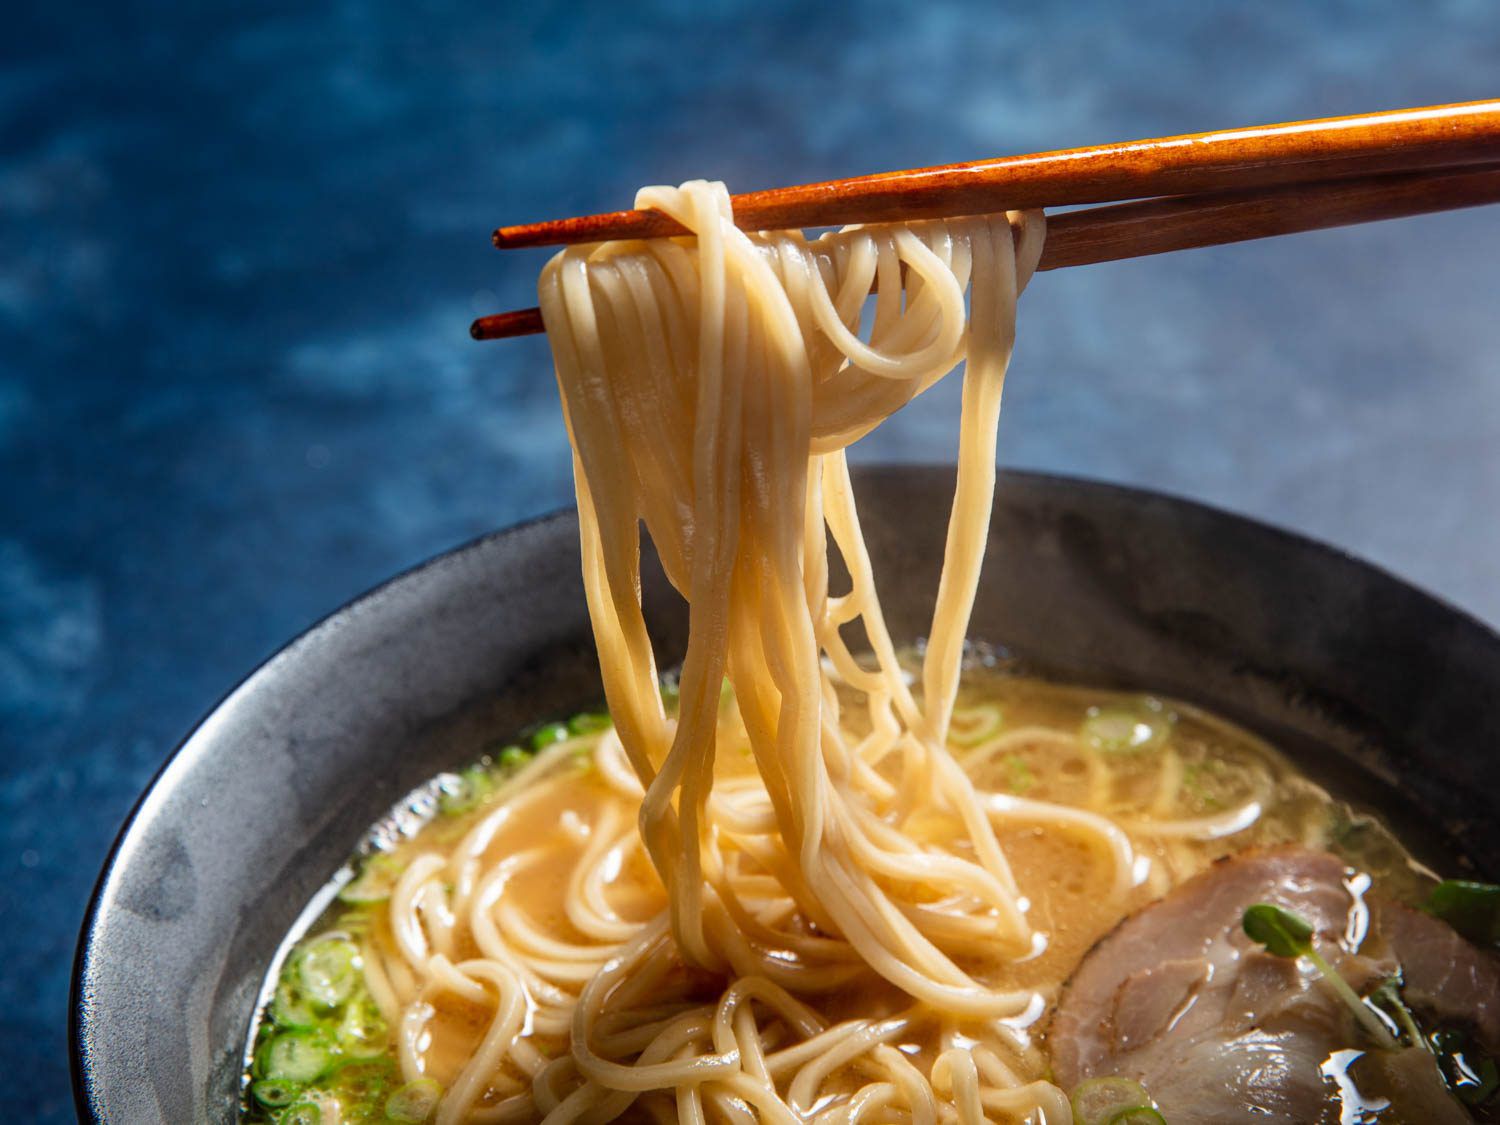 用筷子从一碗拉面中抽出自制的碱性面条